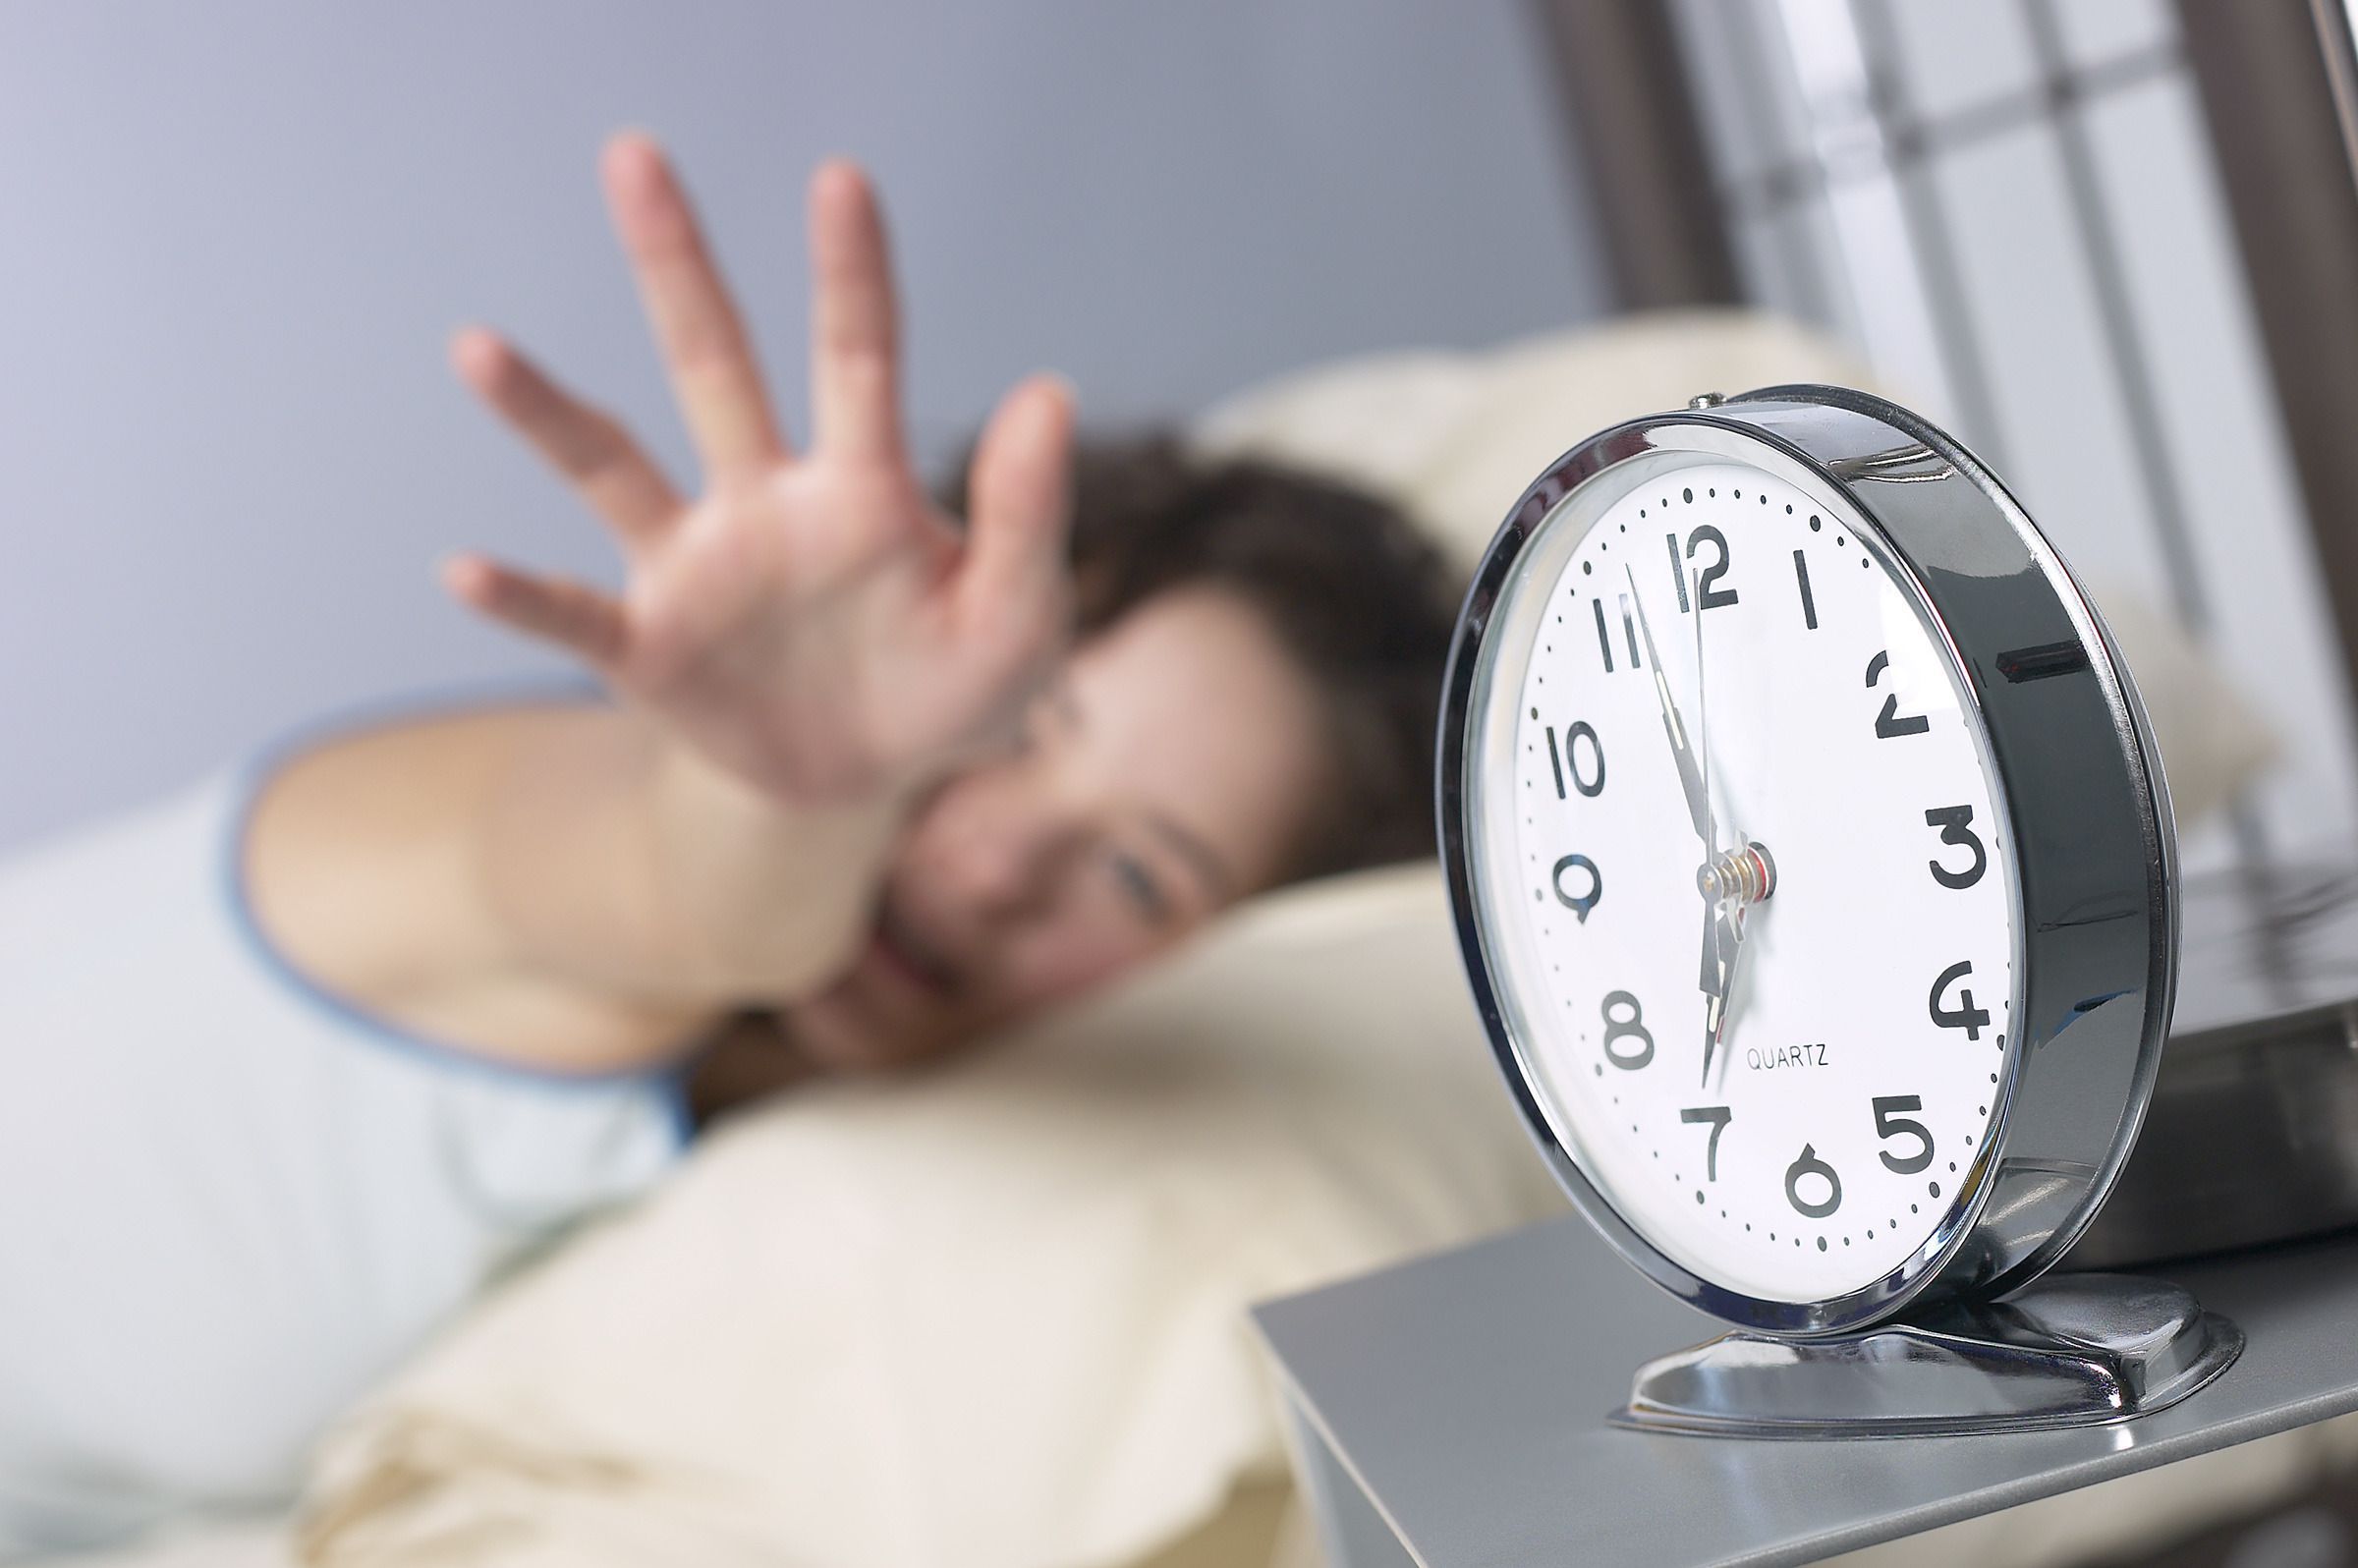 Вчені встановили, що переставляти будильник на «п'ять хвилин» пізніше — дуже погано для здоров'я. В чому ж причина?